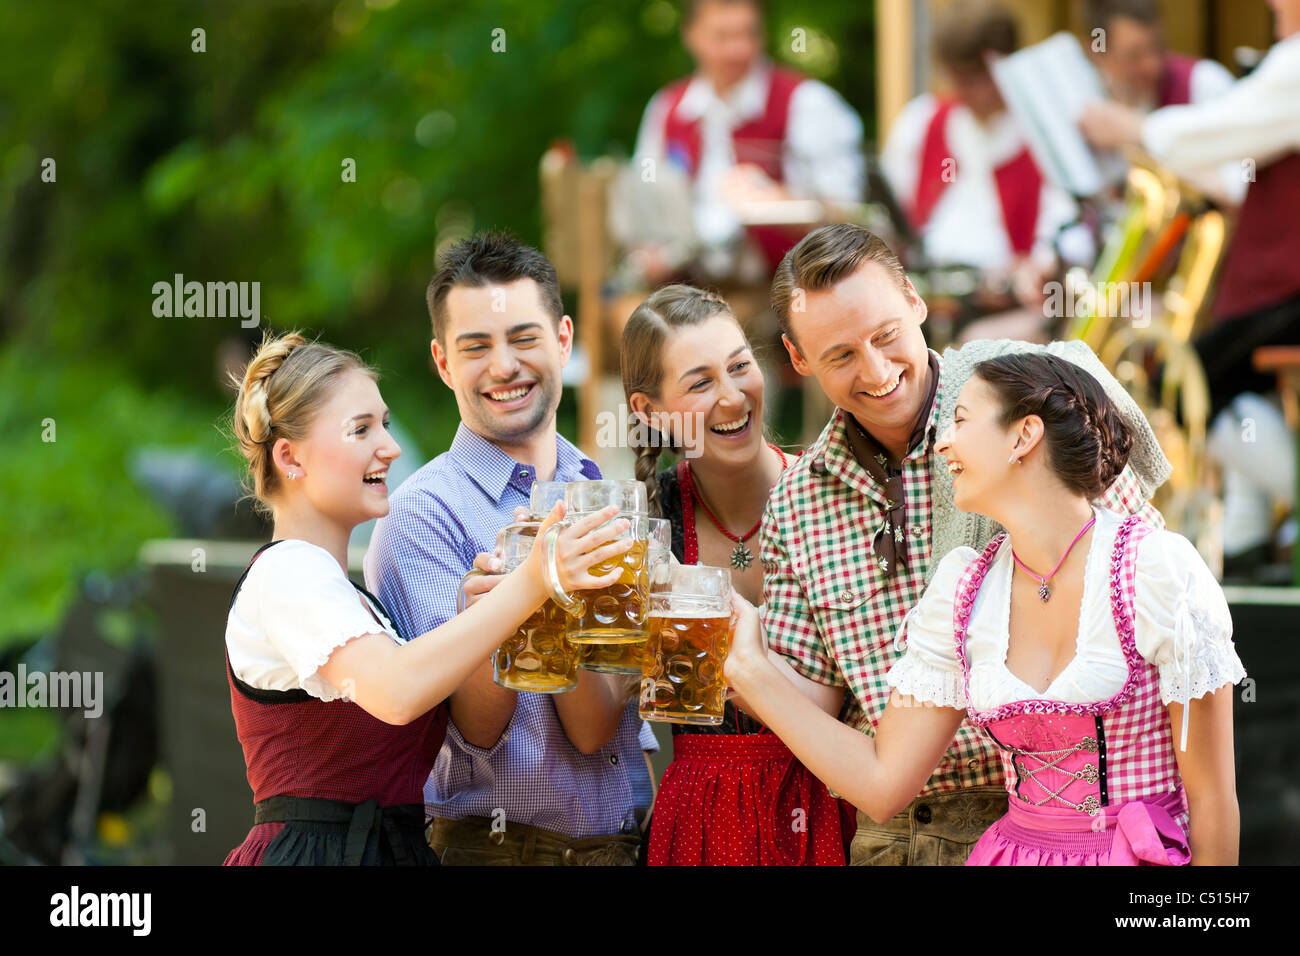 Im Biergarten in Bayern, Deutschland - Freunde in Tracht, Dirndl und Lederhosen und Dirndl stand vor band Stockfoto